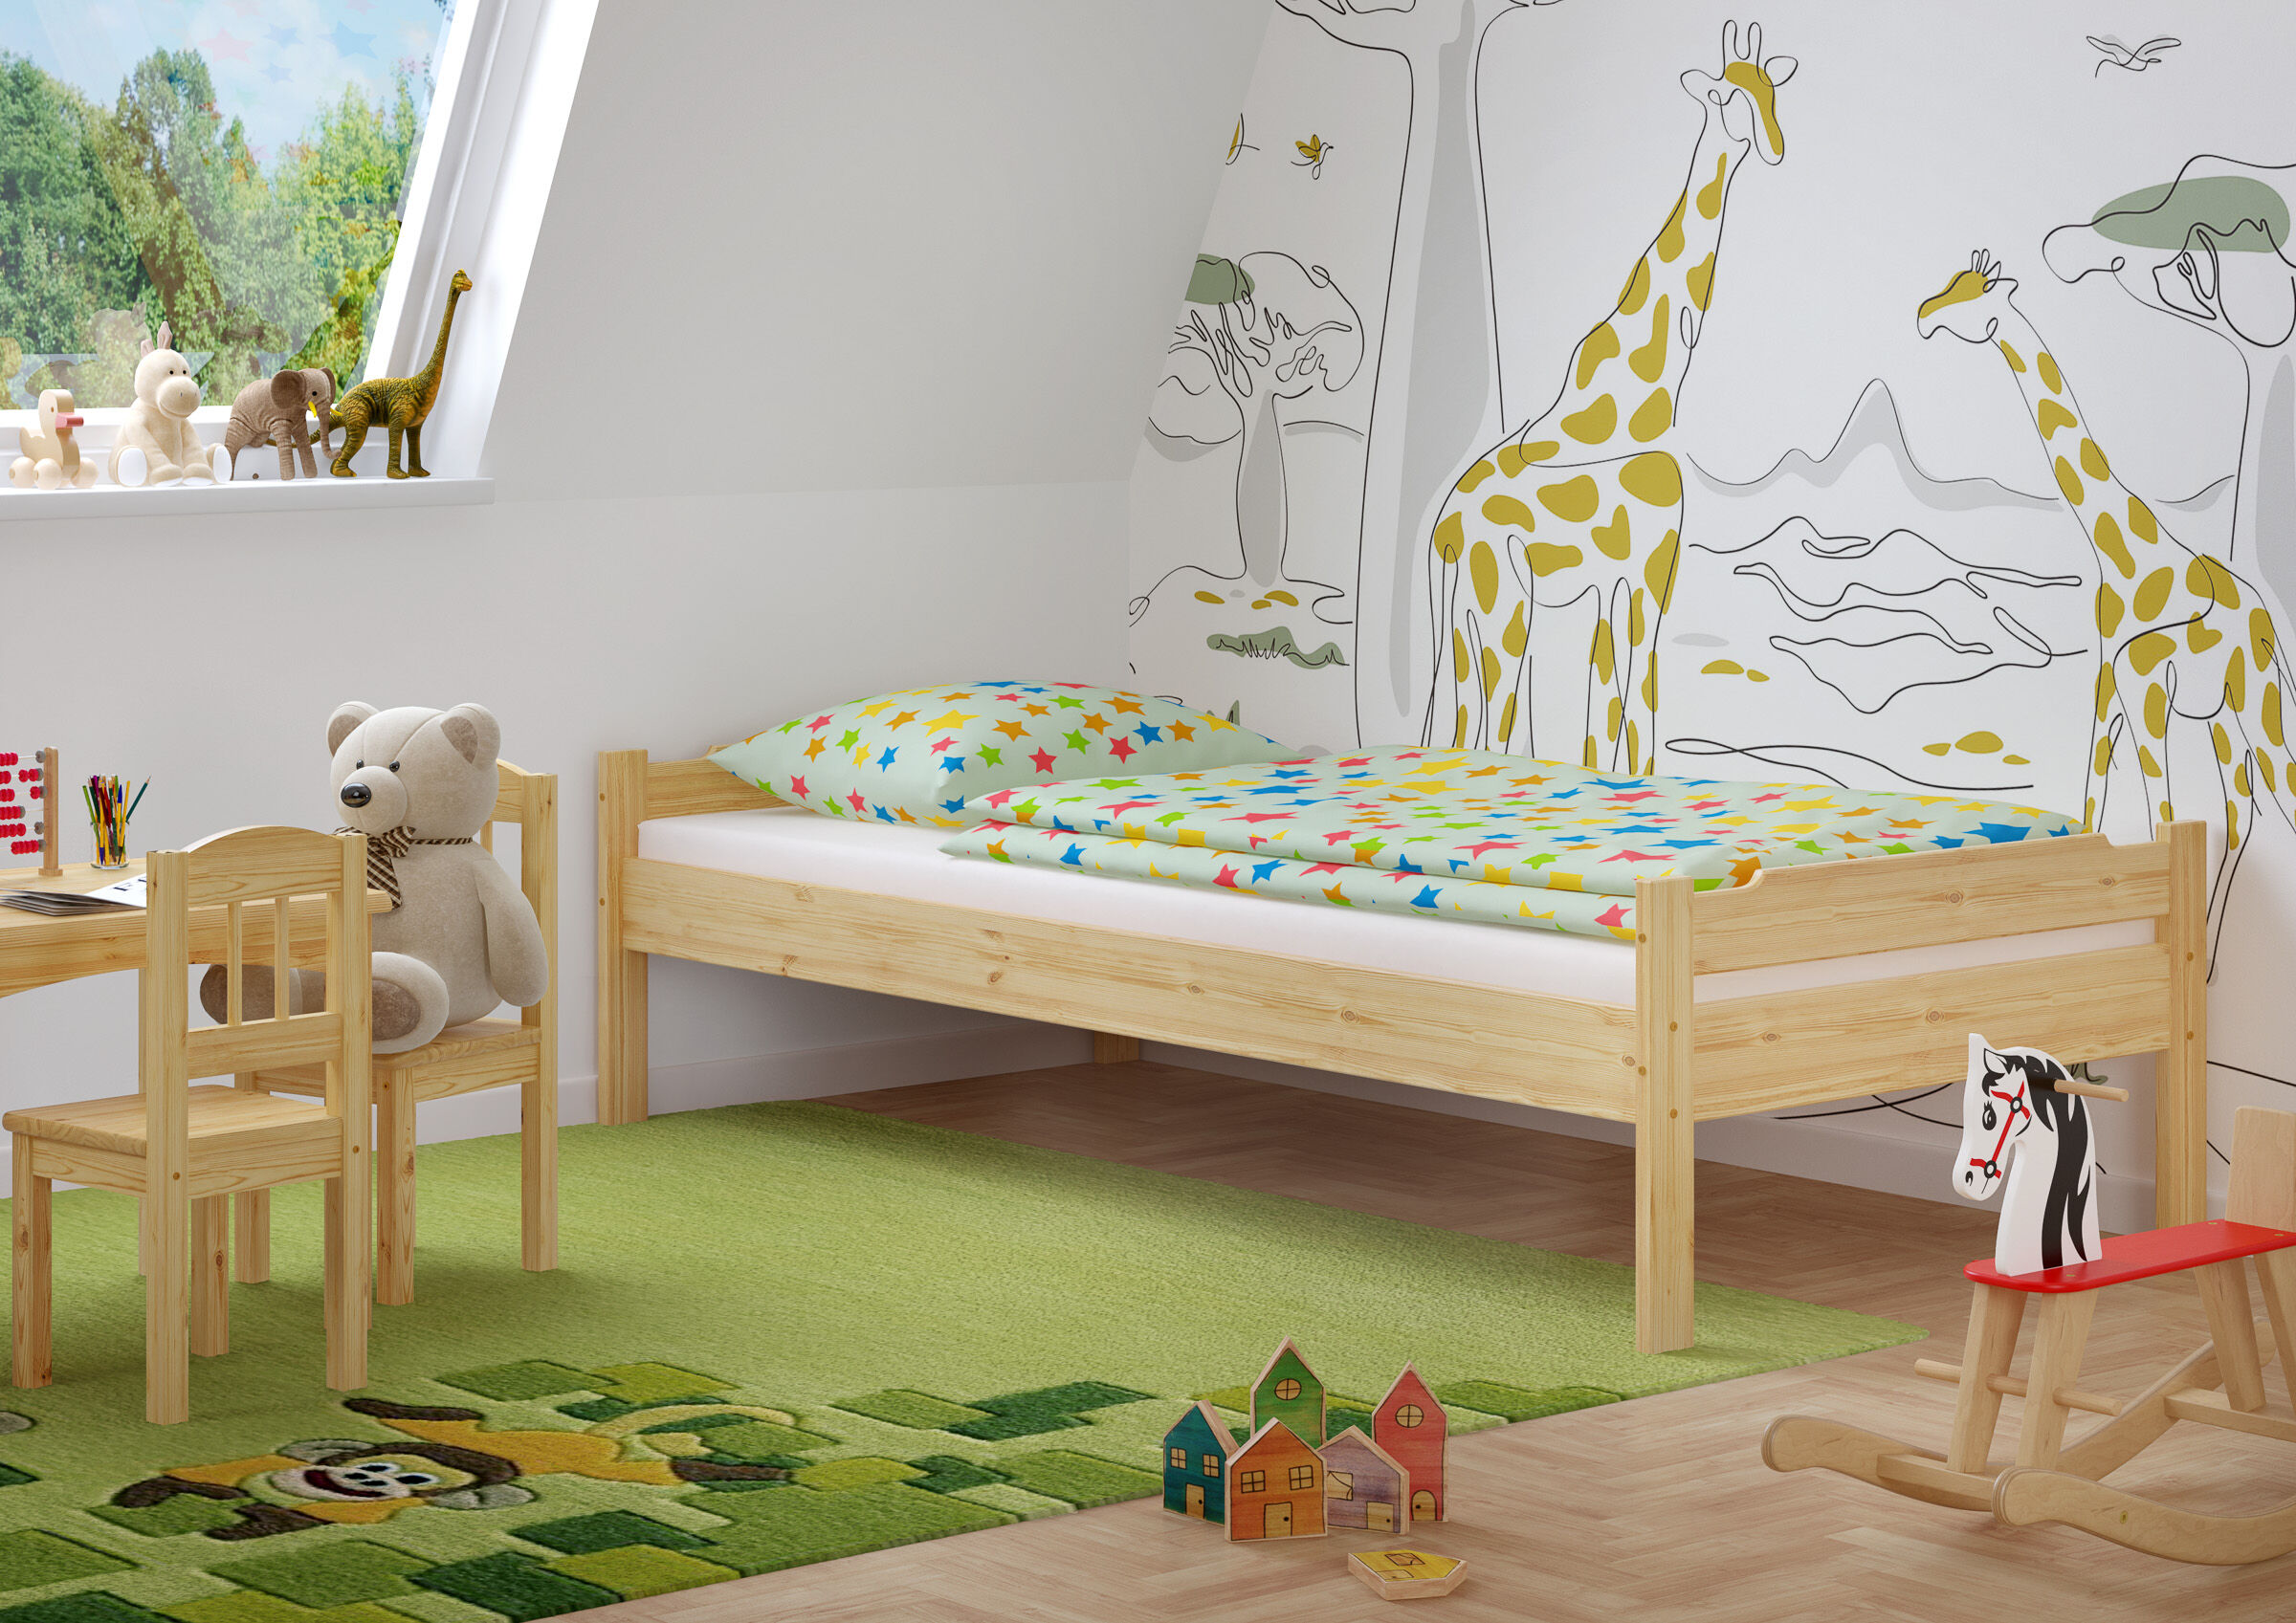 Zimmerbild mit Kinderbett